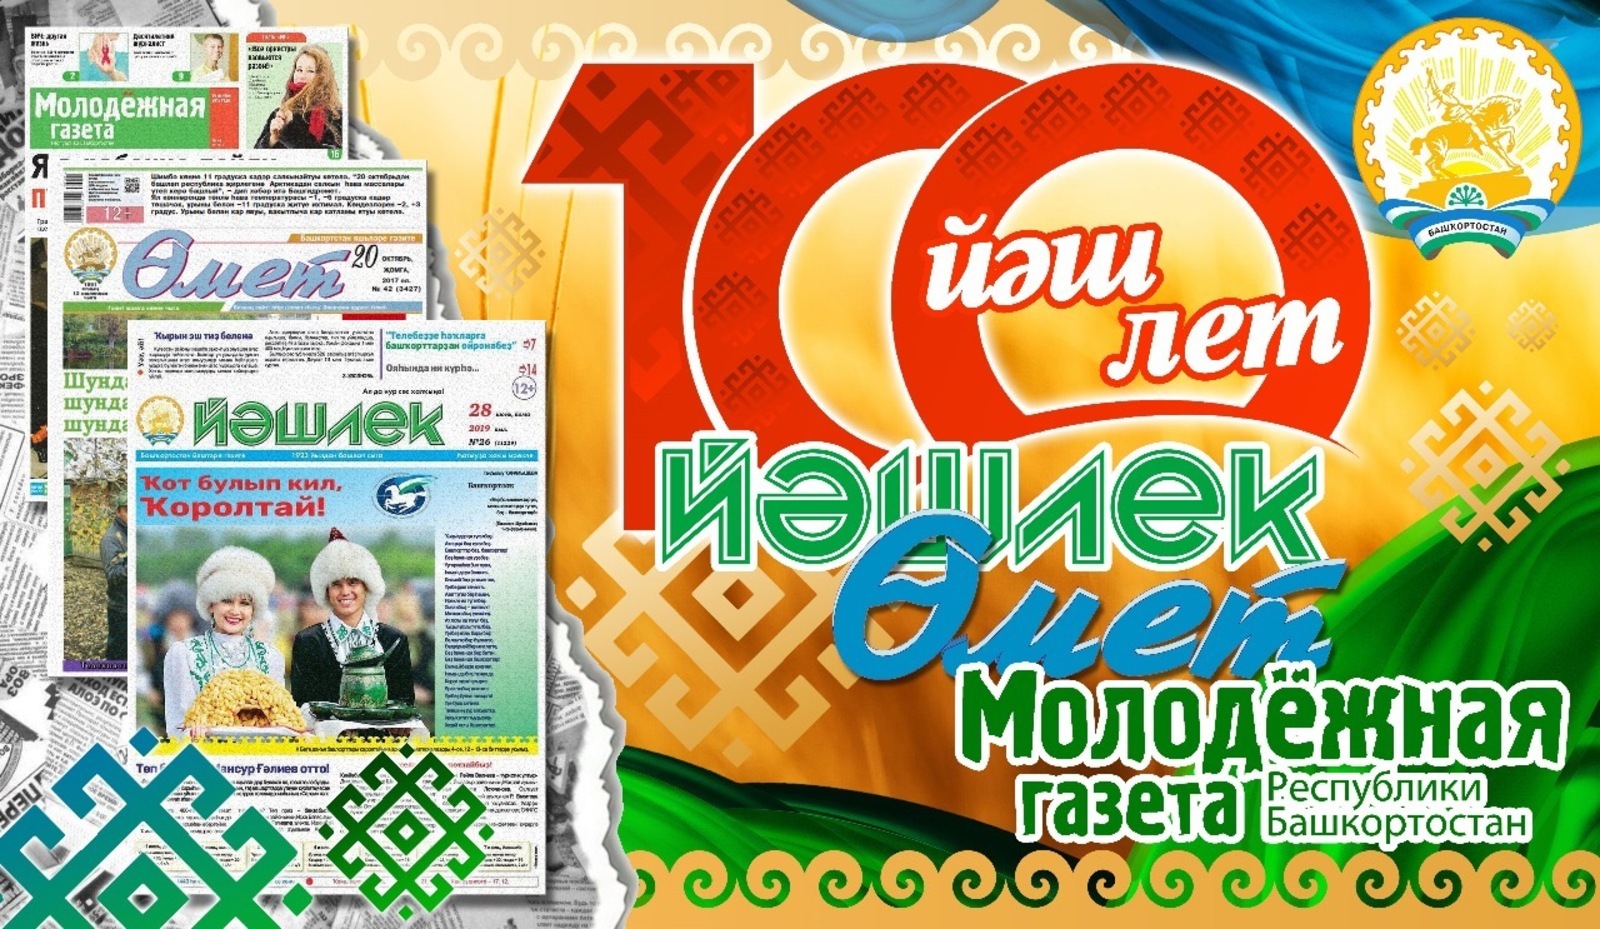 Молодёжные газеты Башкирии приглашают на празднование столетия!